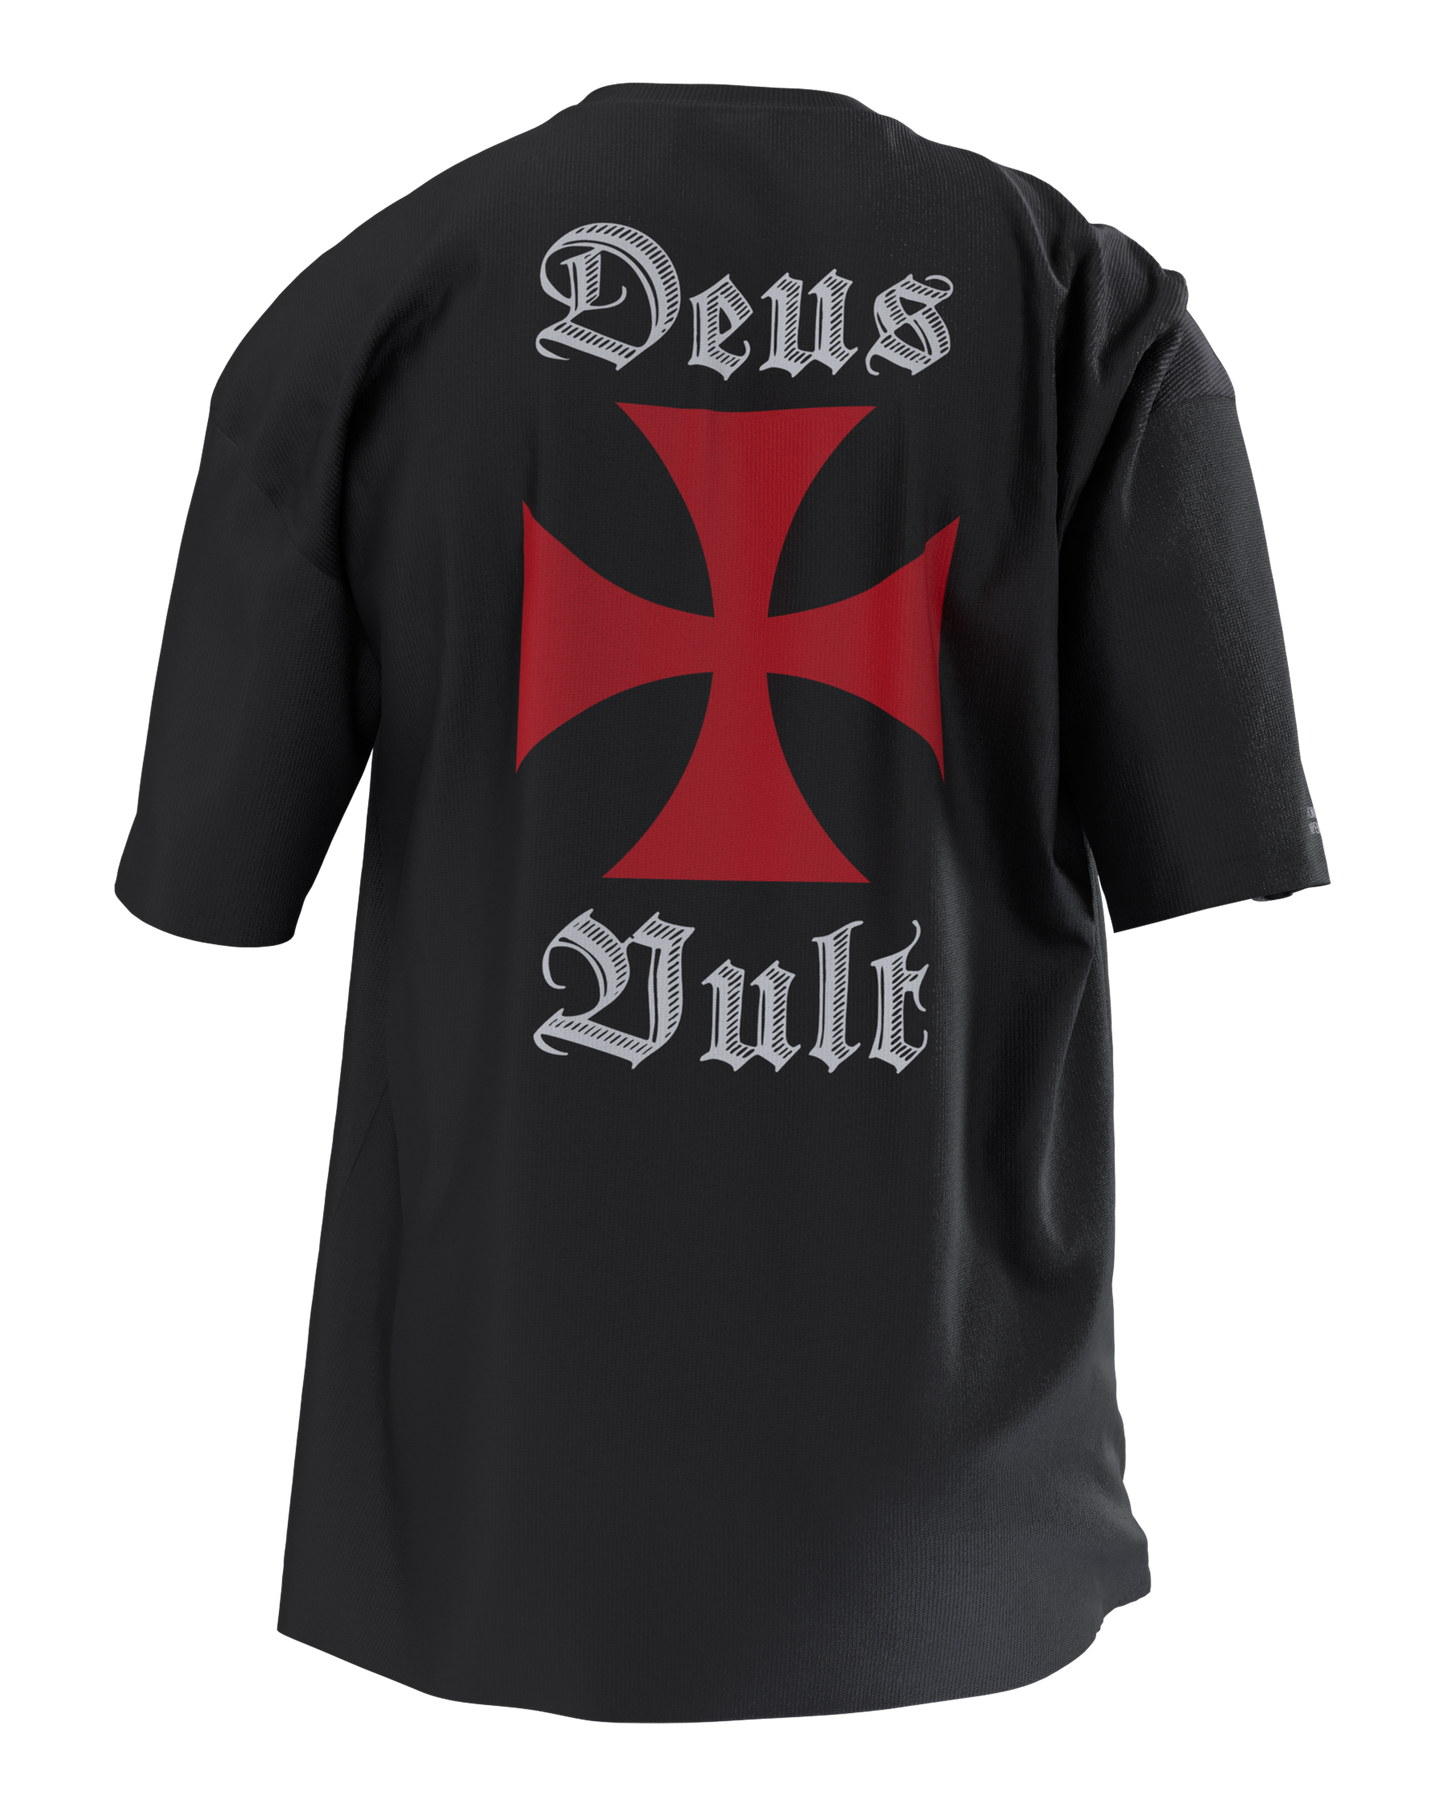 Tee-shirt oversize "Deus Vult" noir